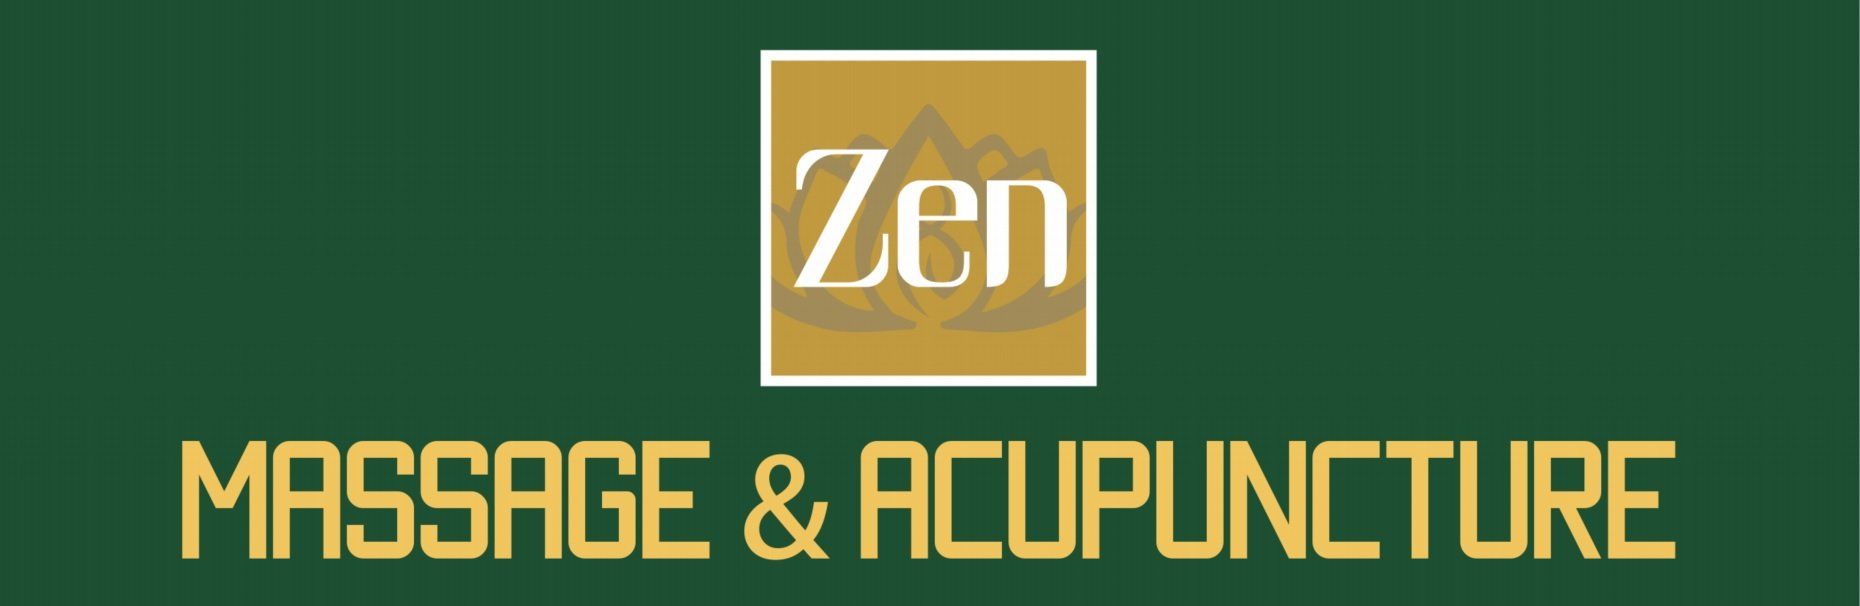 Zen Massage & Acupuncture